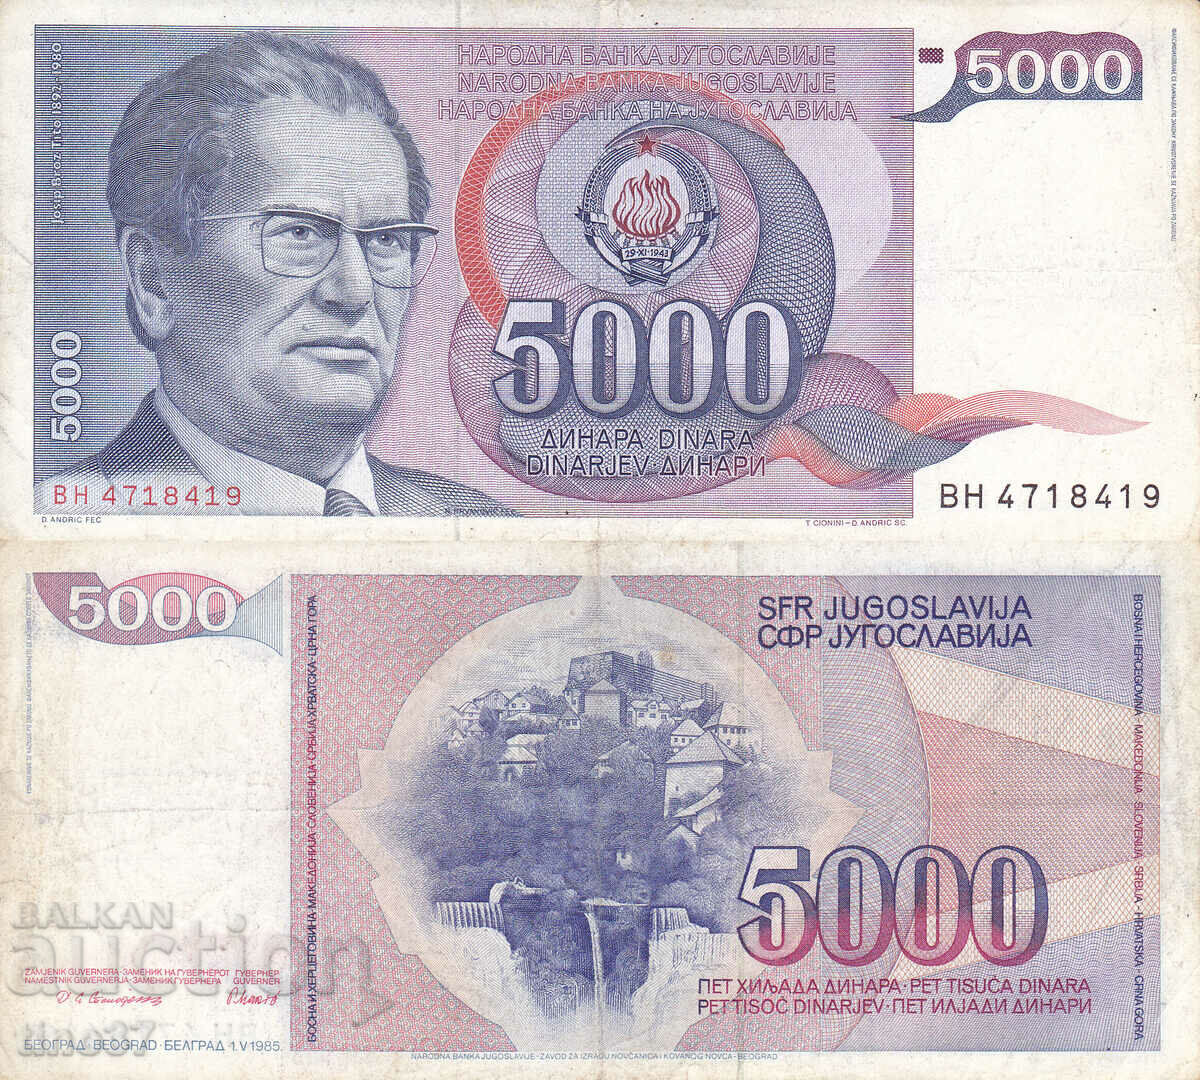 tino37- YUGOSLAVIA - 5000 DINARS - 1985